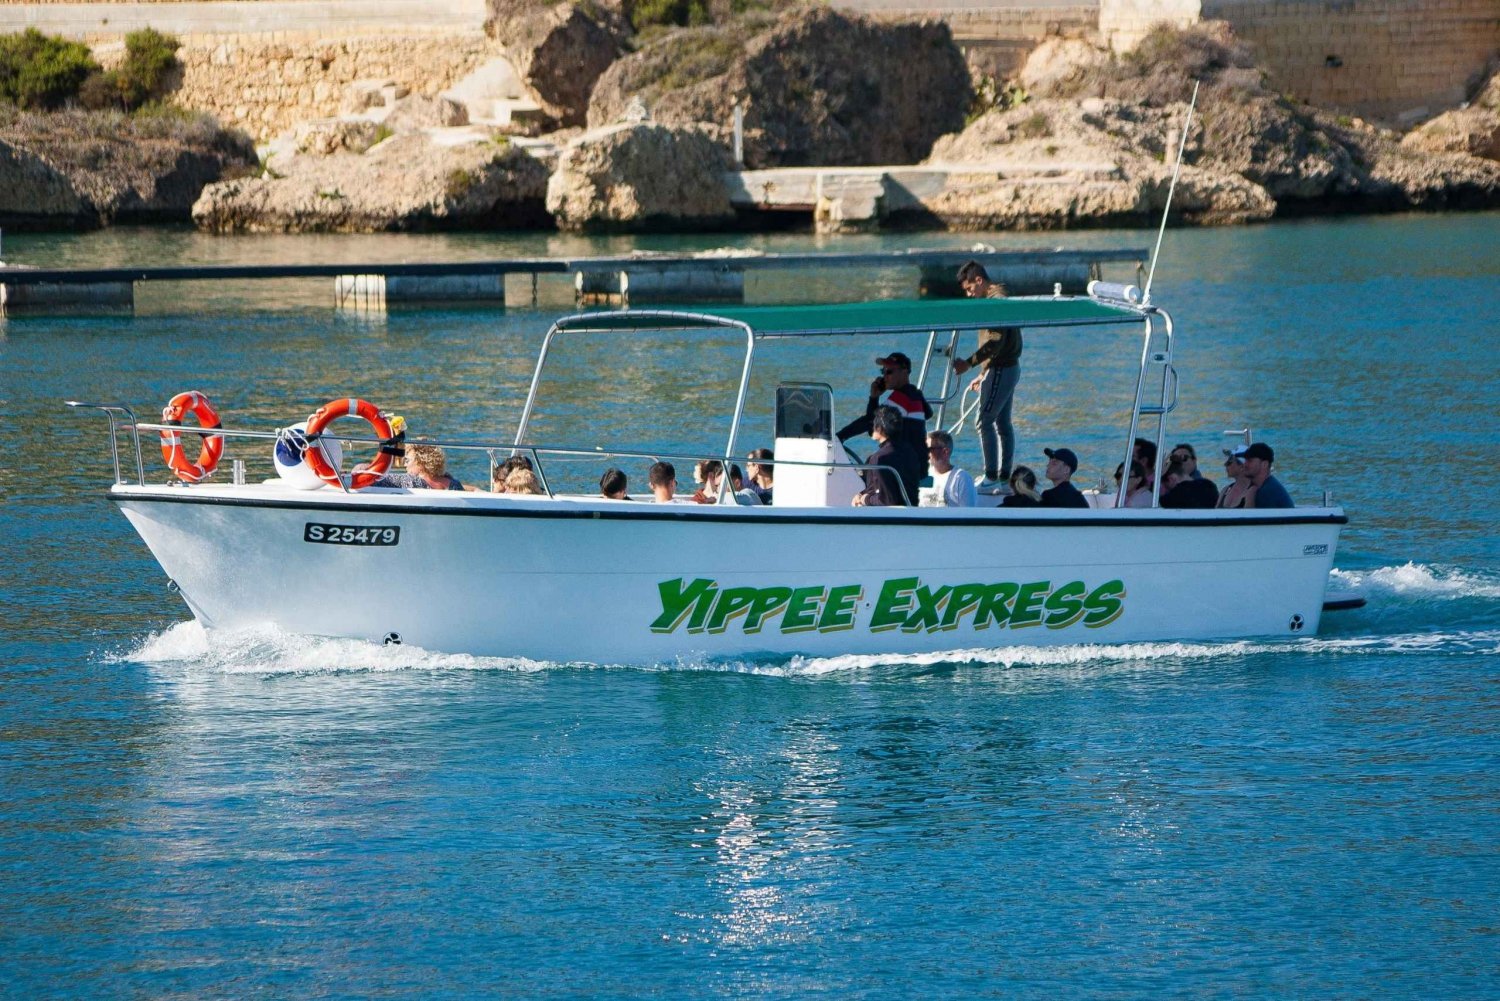 Prywatny czarter łodzi - Comino/część Gozo